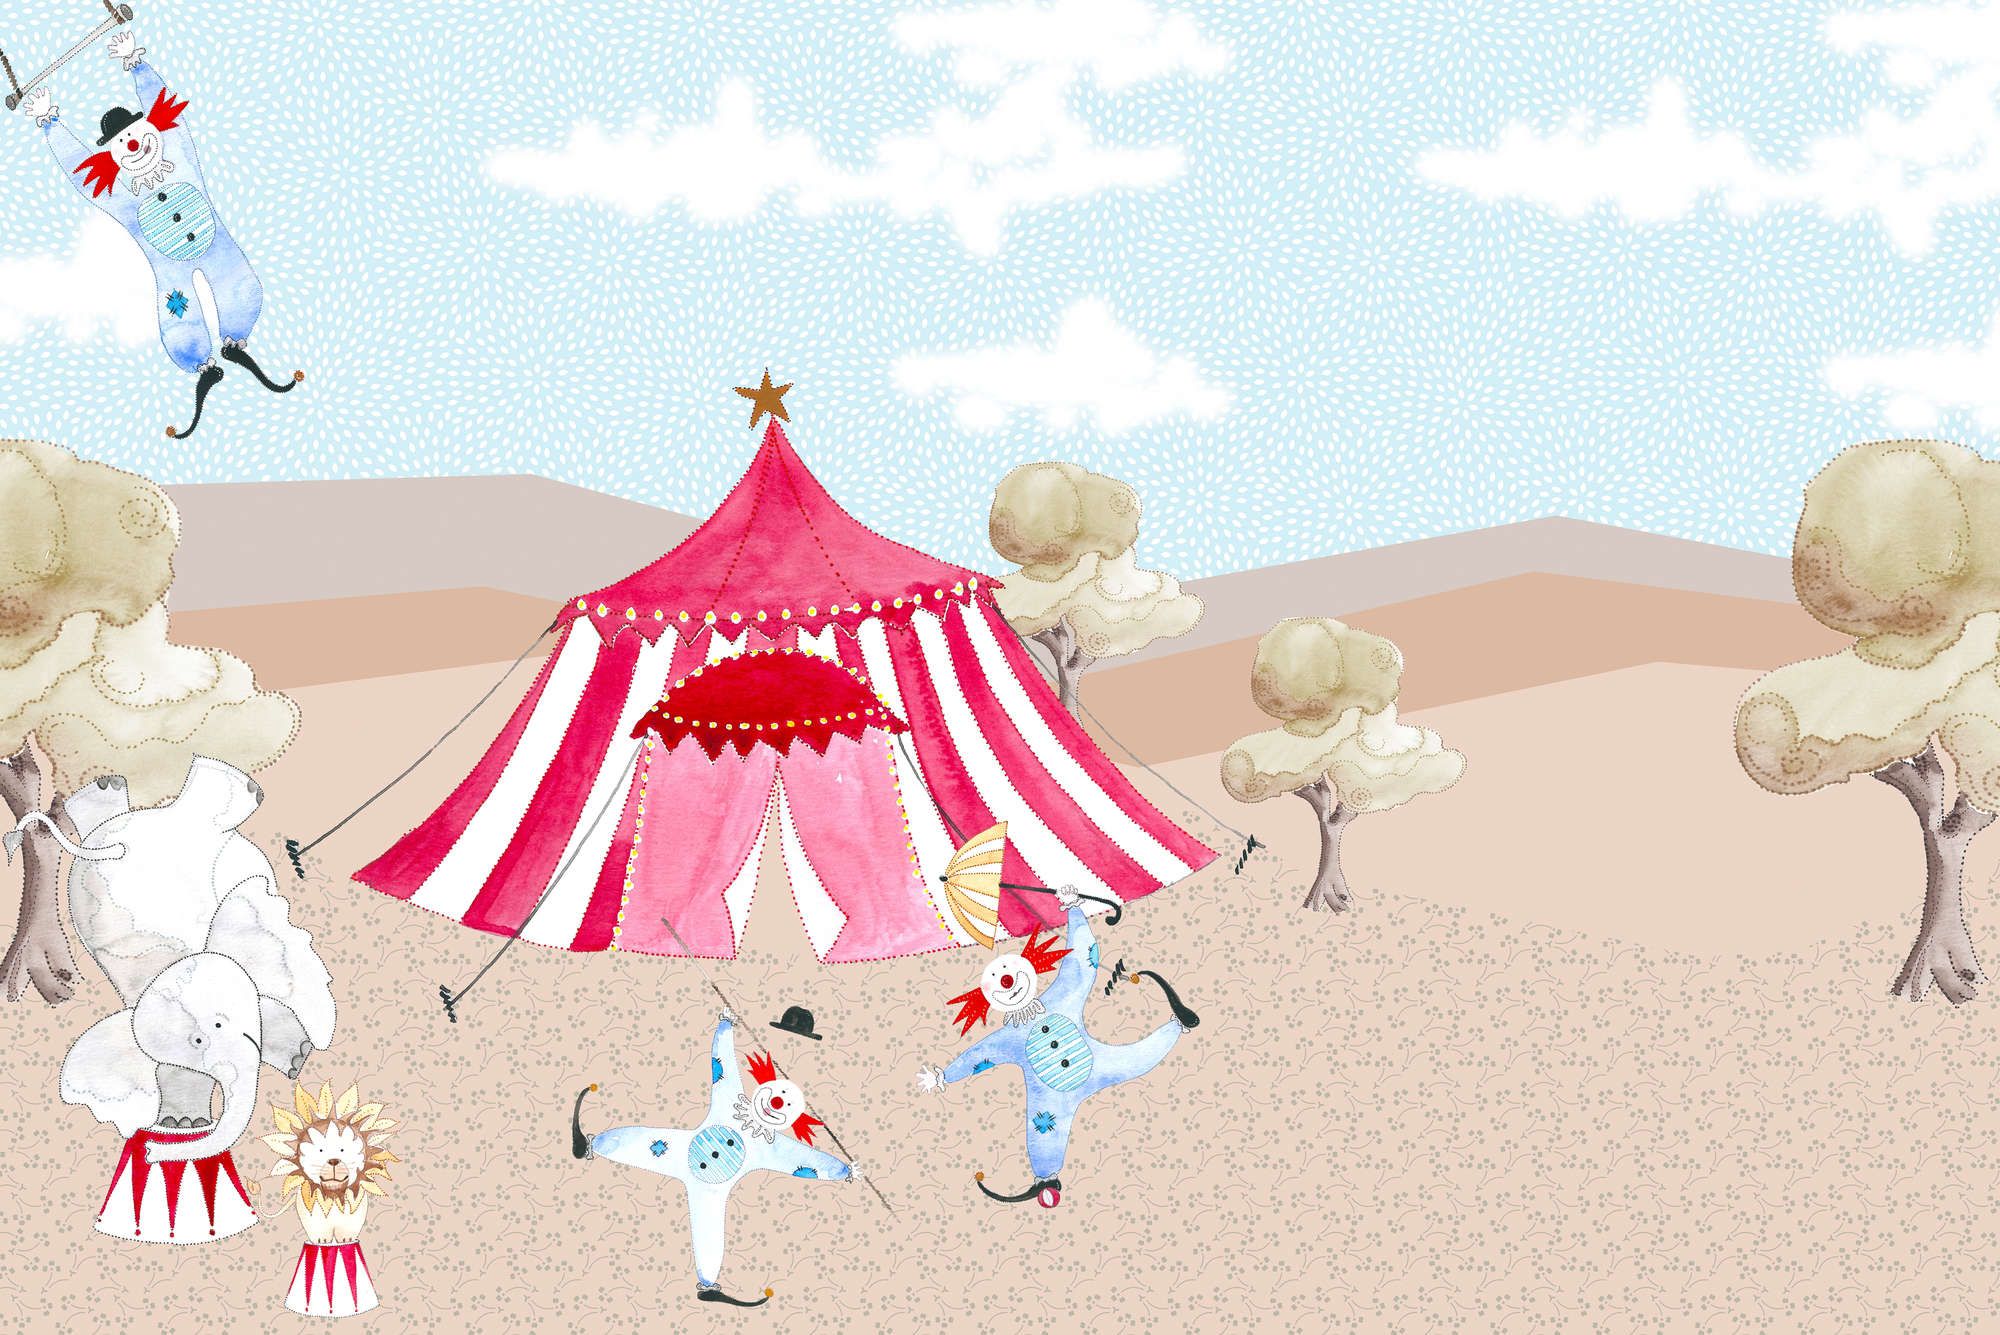             Carta da parati per bambini che disegna la tenda del circo con gli artisti su vello liscio di madreperla
        